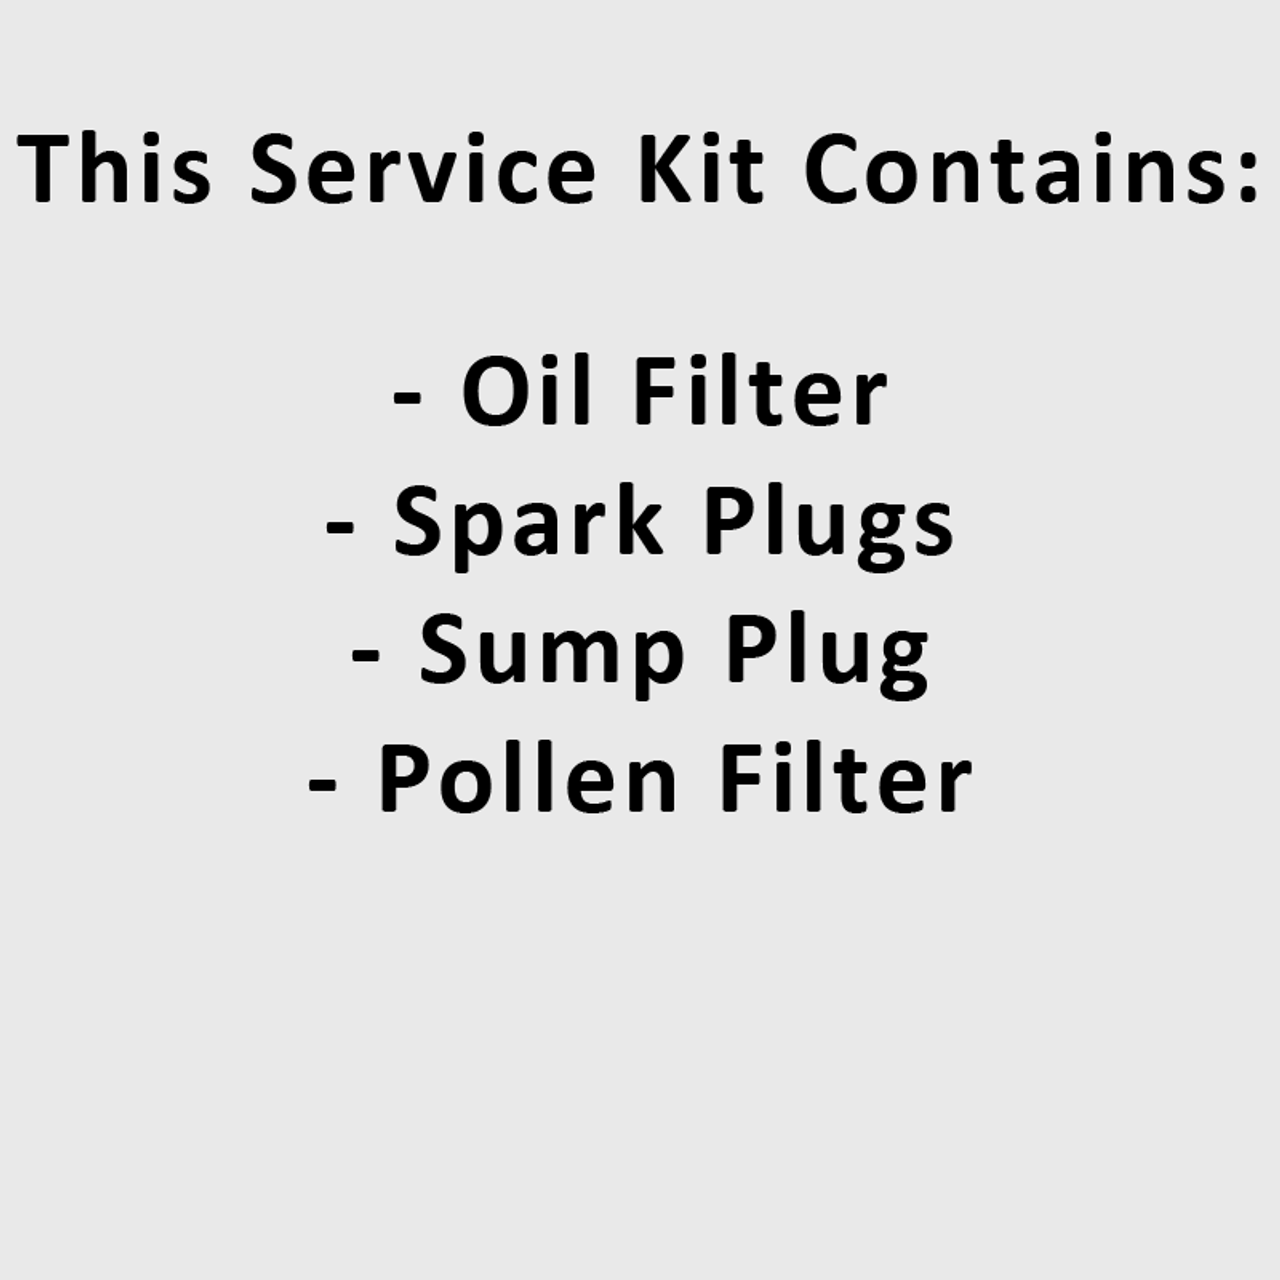 Service Kit